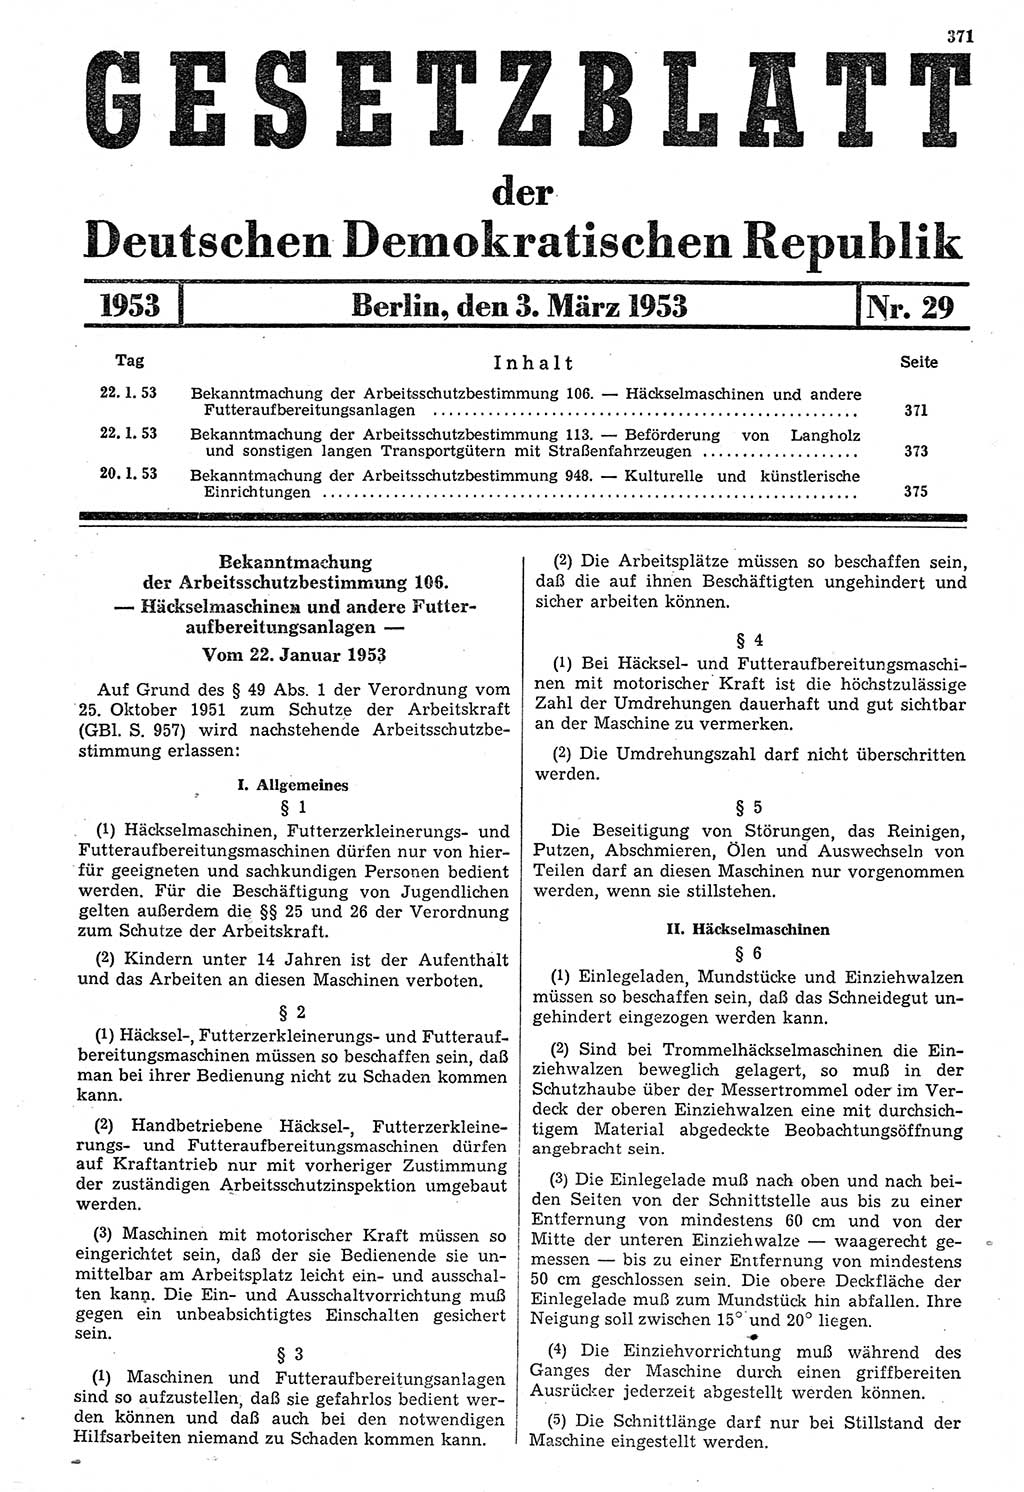 Gesetzblatt (GBl.) der Deutschen Demokratischen Republik (DDR) 1953, Seite 371 (GBl. DDR 1953, S. 371)